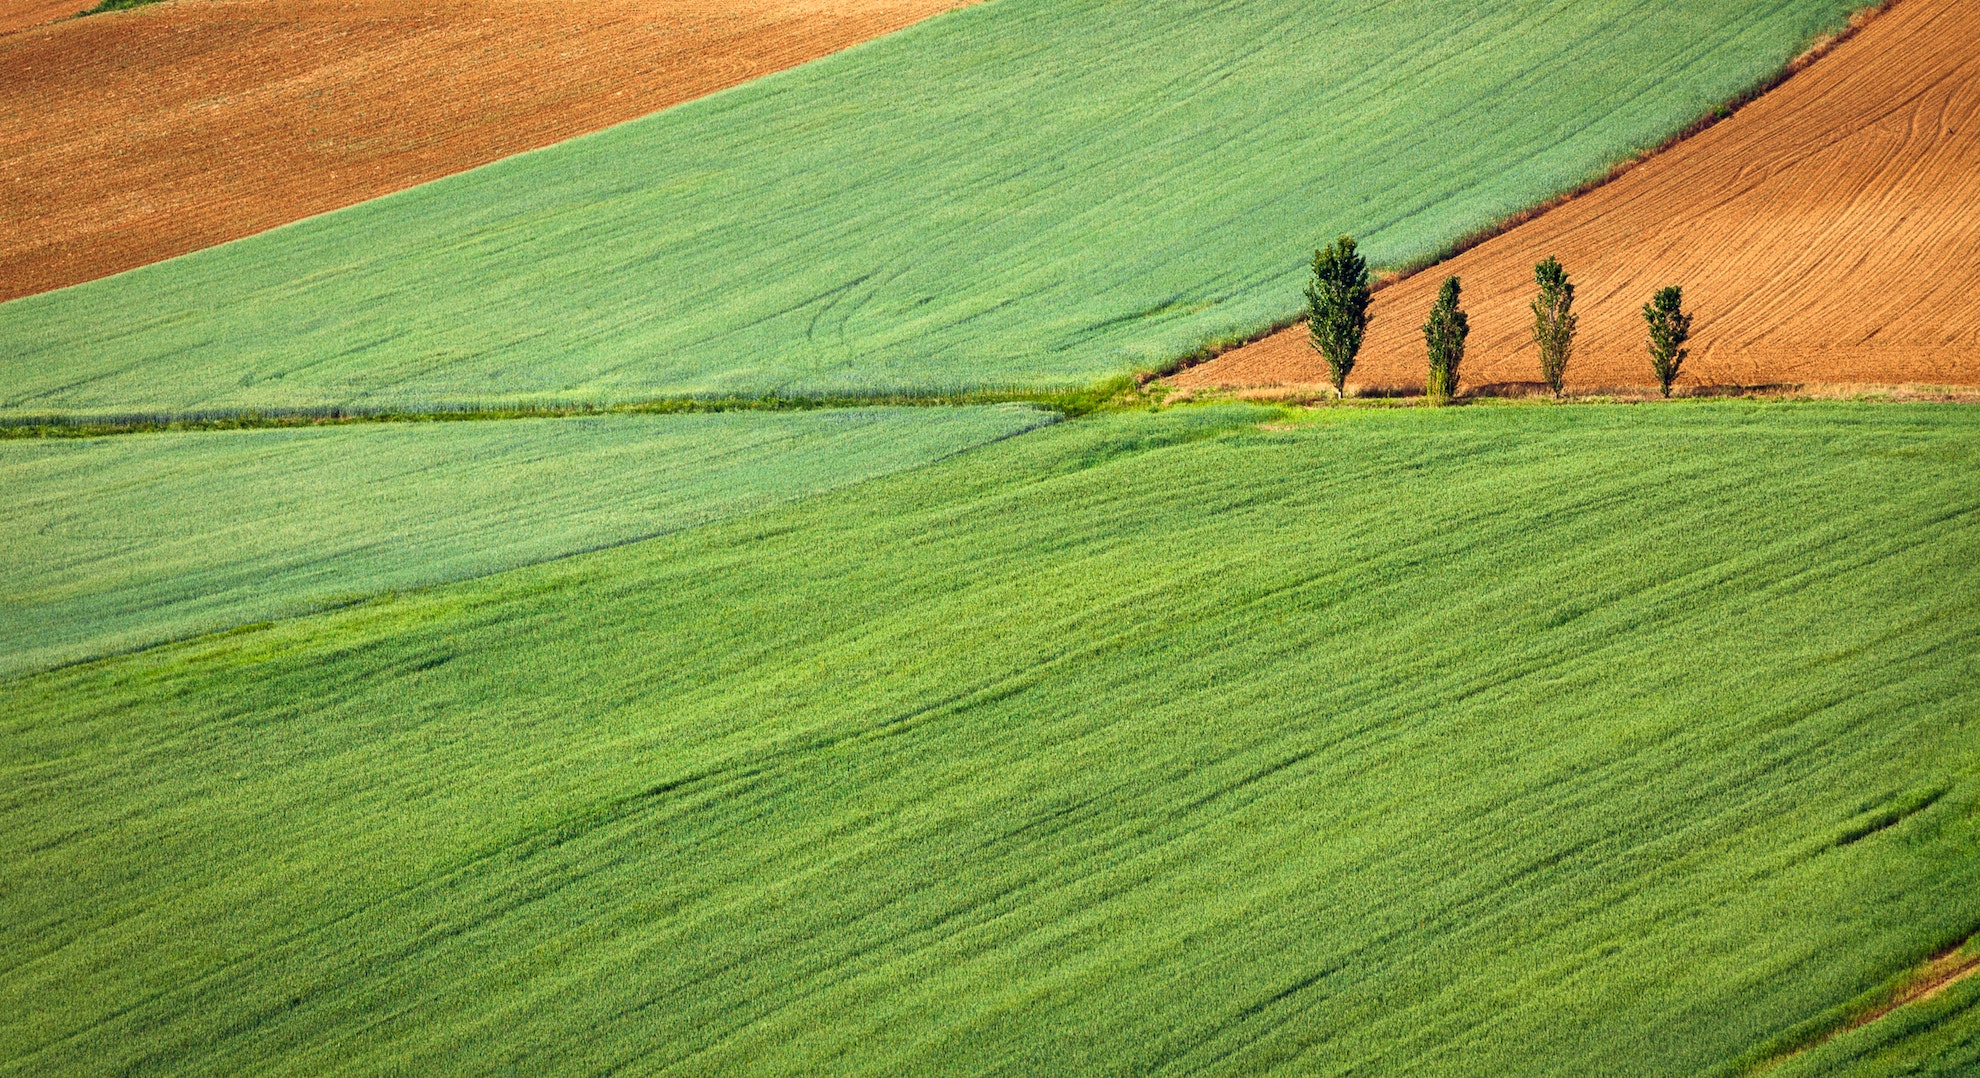 Crop fields in Italy